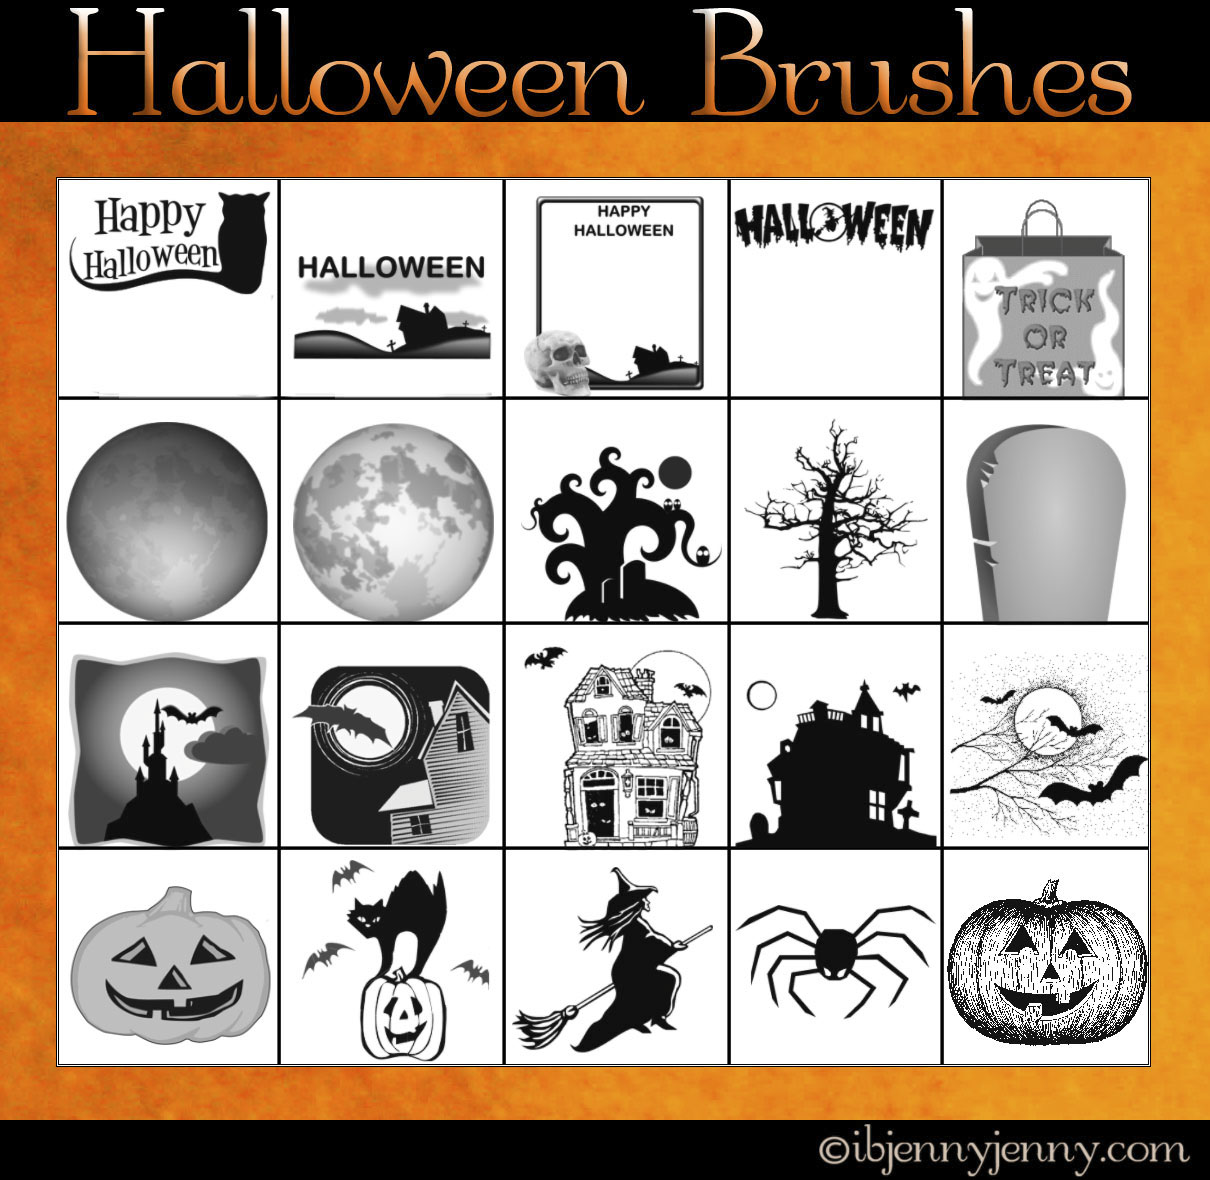 Free Halloween Photoshop Brushes